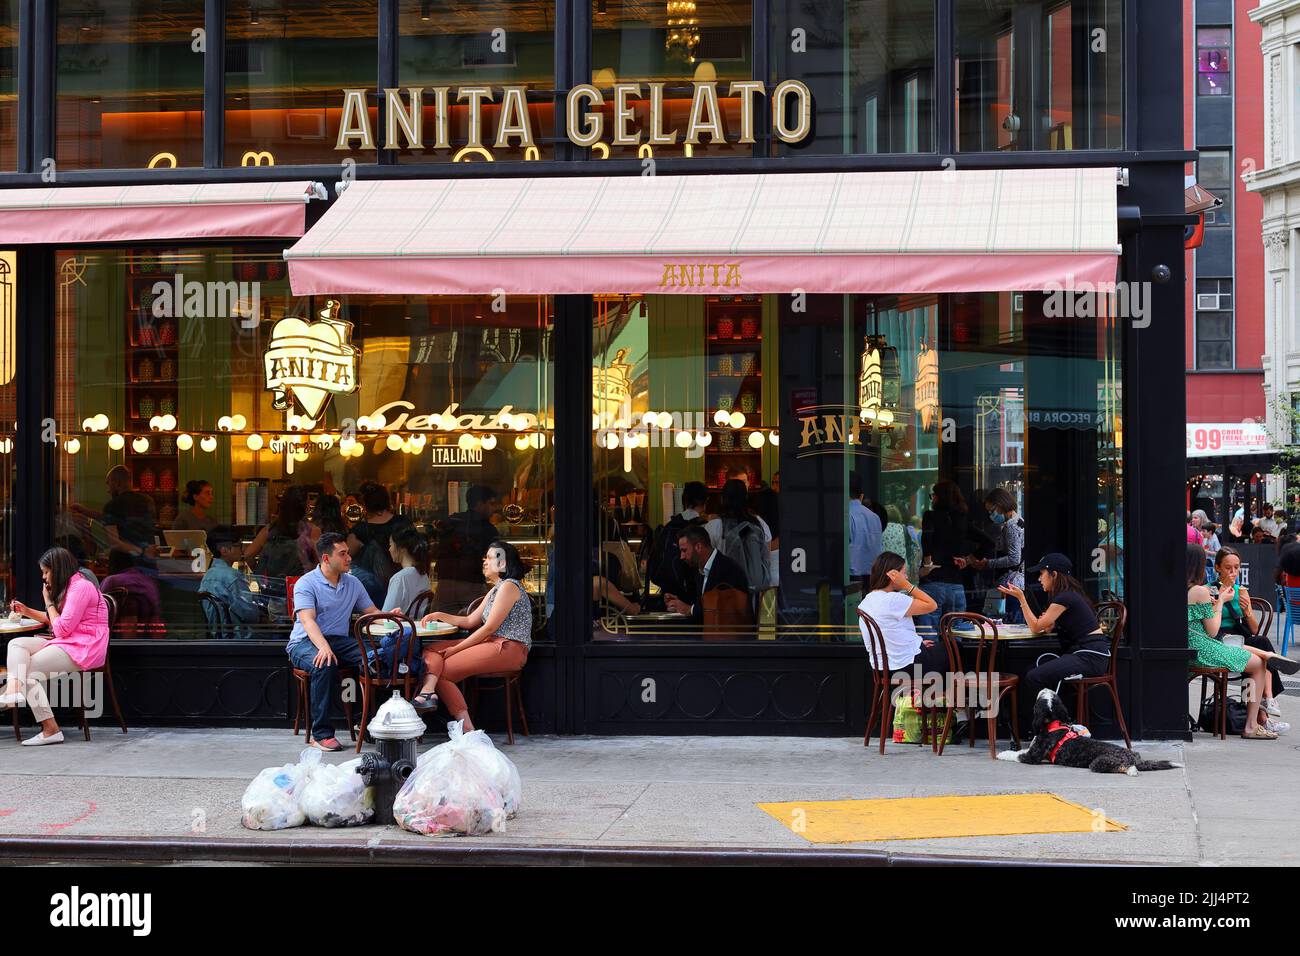 Anita La Mamma del Gelato, 1141 Broadway, New York, NYC Schaufensterfoto eines israelischen Eisladens in Manhattan Nomad. Stockfoto